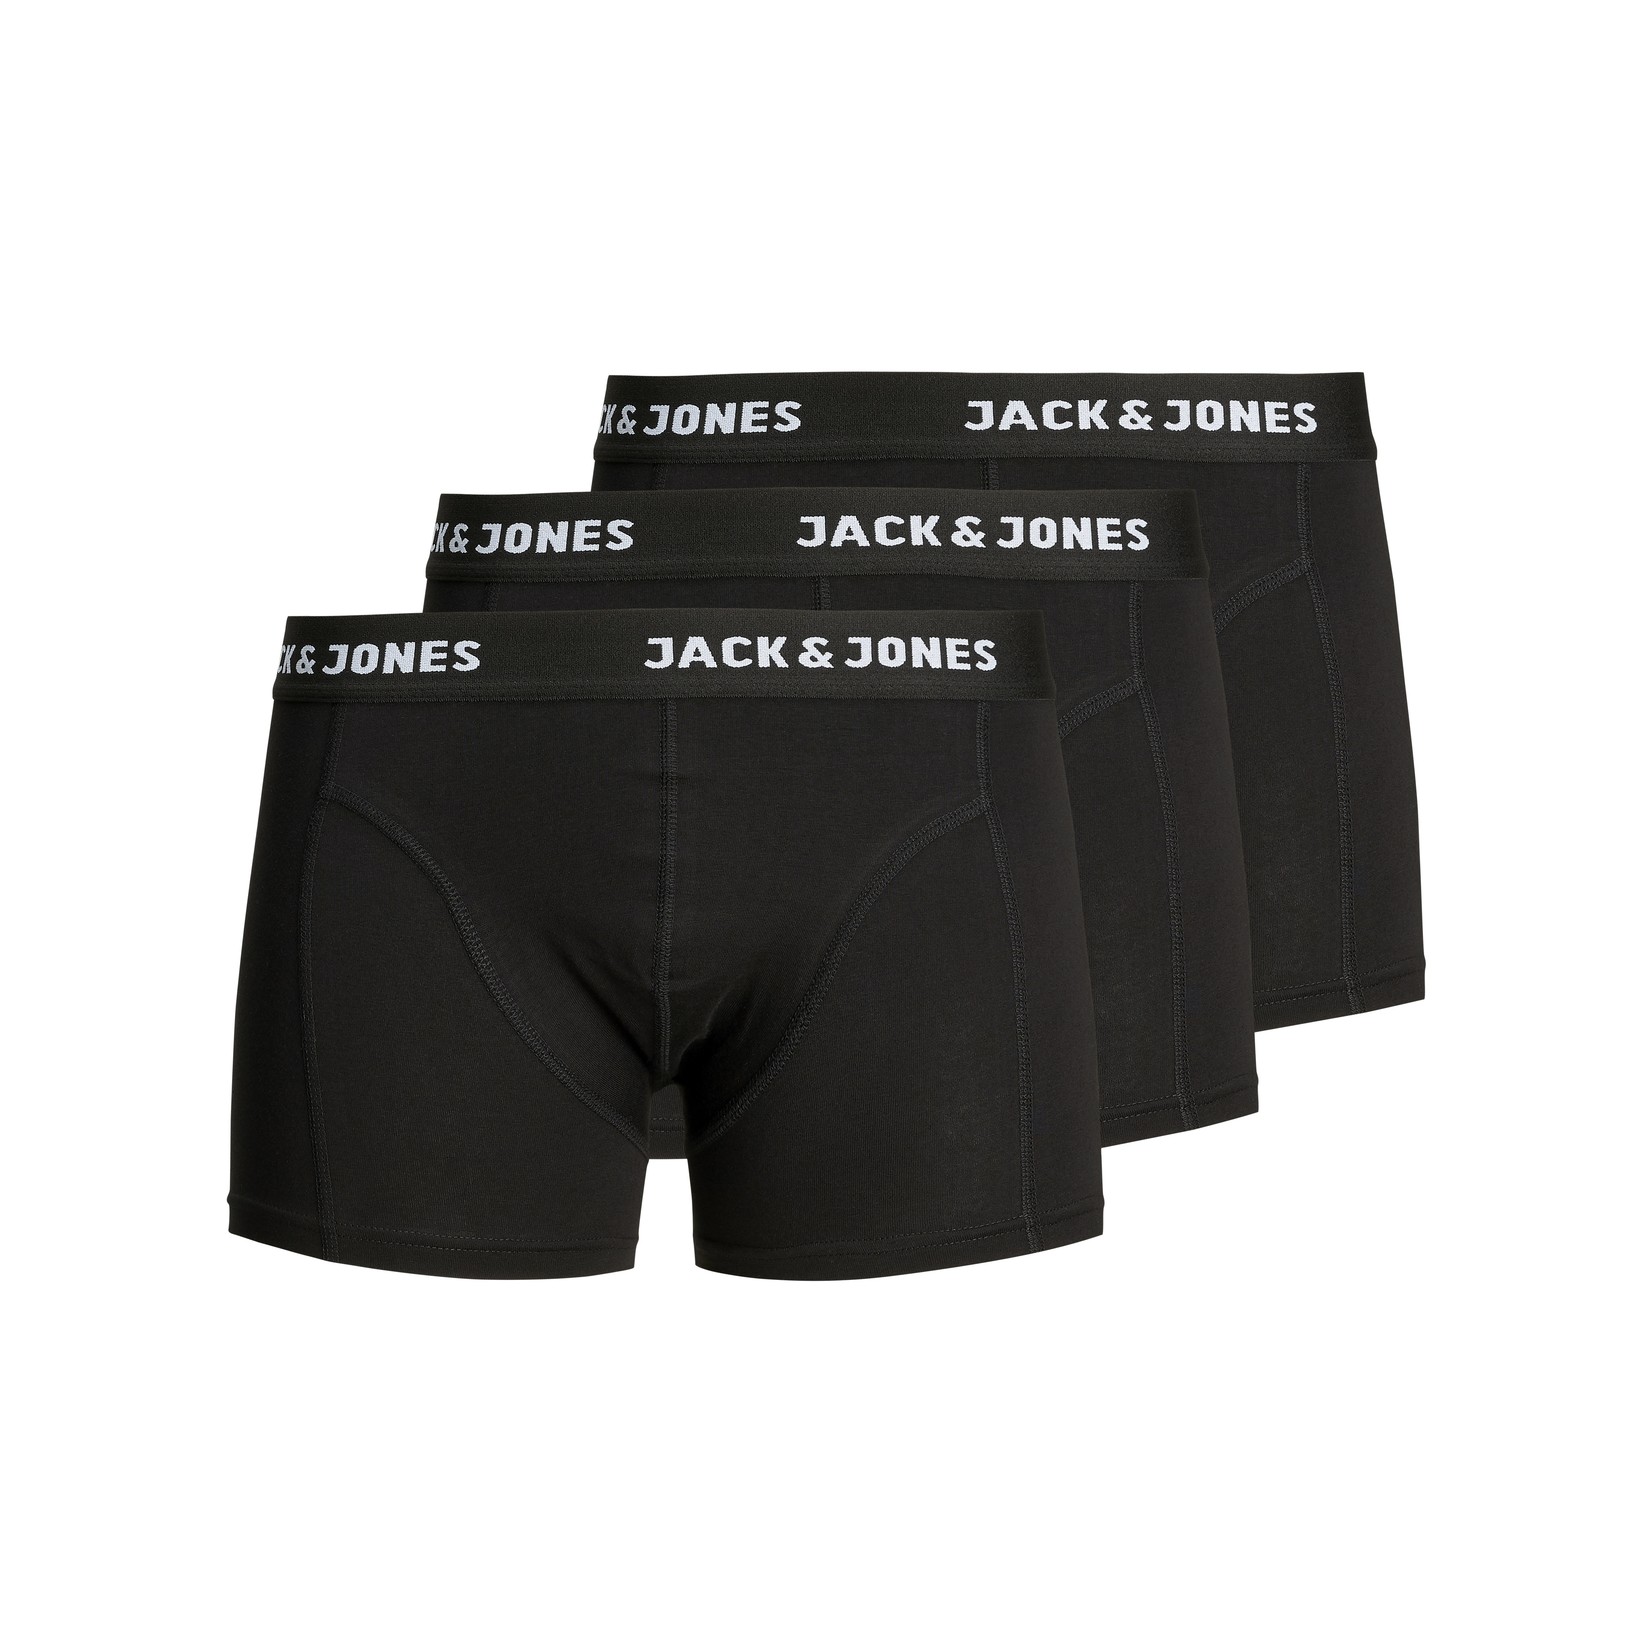 Jack & Jones 3-Pack trunks - black/black